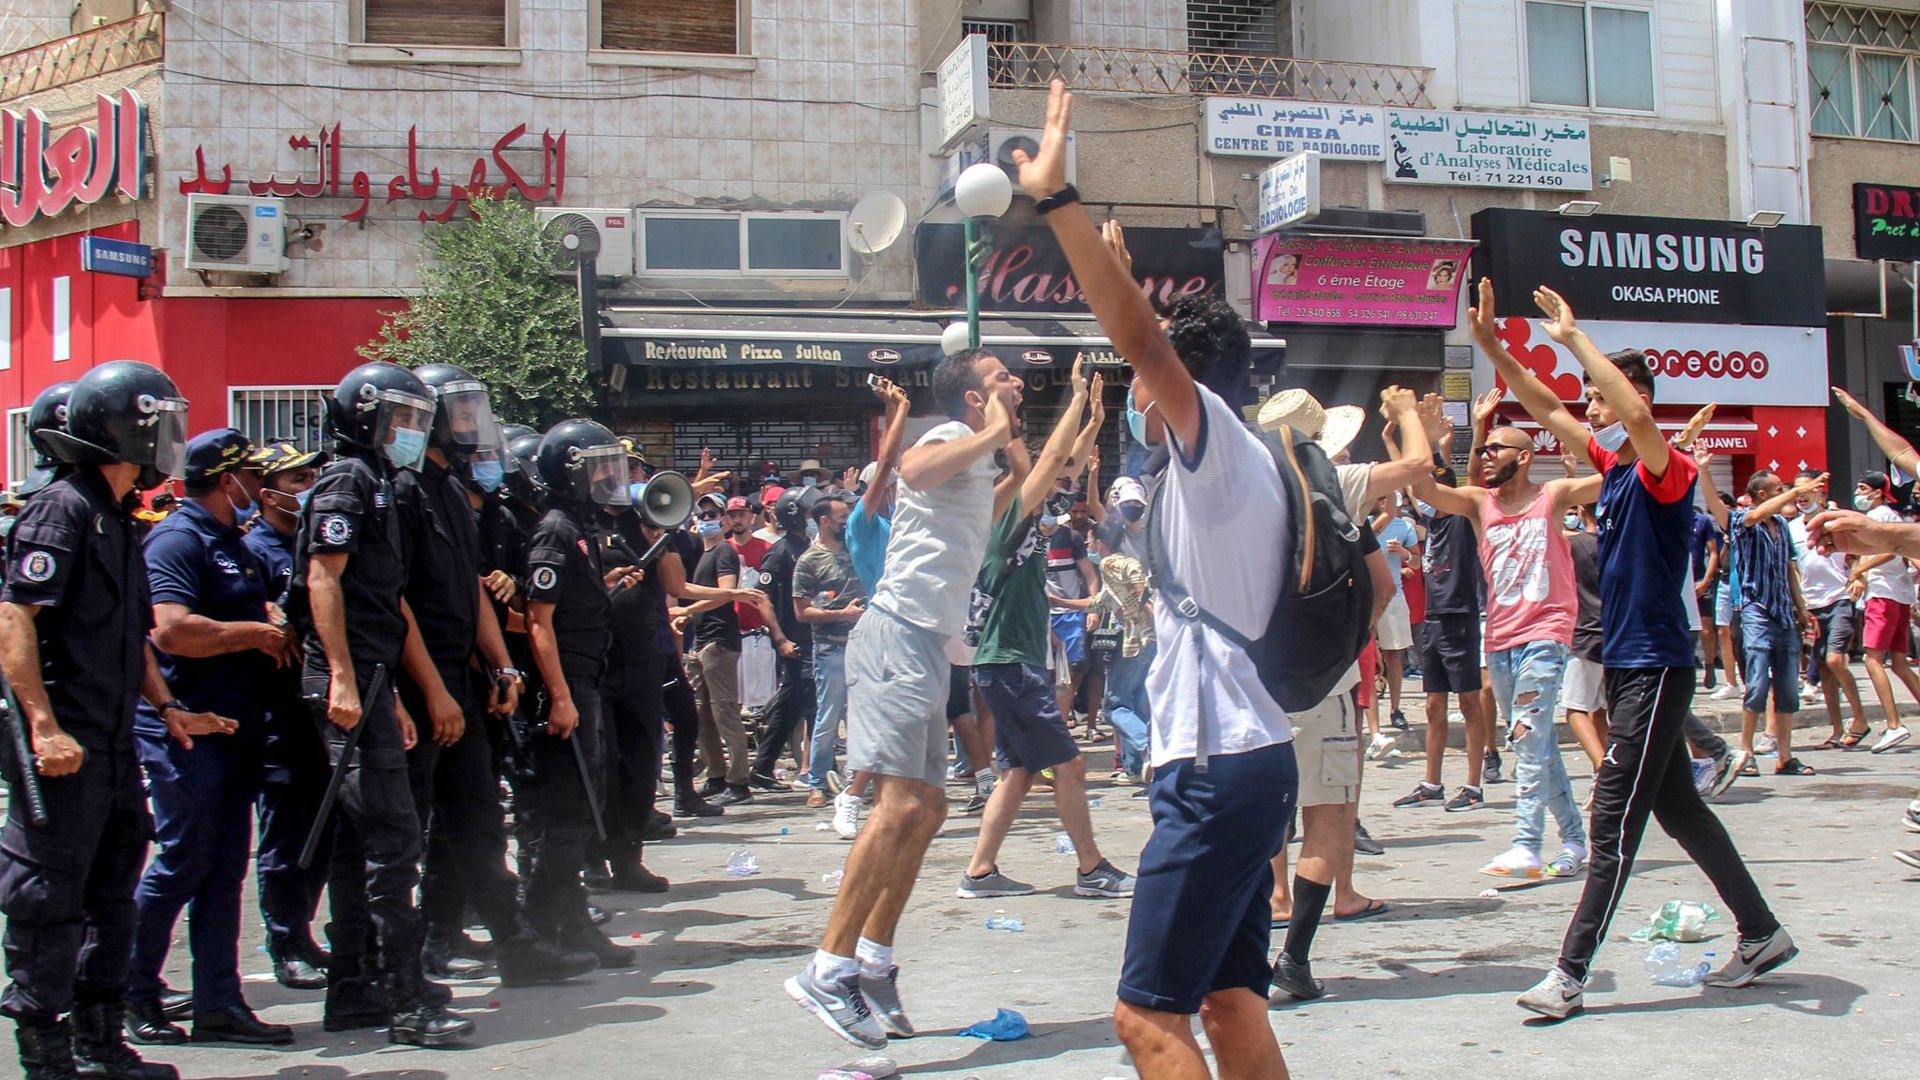 In mehreren tunesischen Städten sind teils gewaltsame Proteste ausgebrochen. Die Demonstranten bringen ihre Wut über die Verschlechterung des Gesundheits-, Wirtschafts- und Sozialsystems des Landes zum Ausdruck.